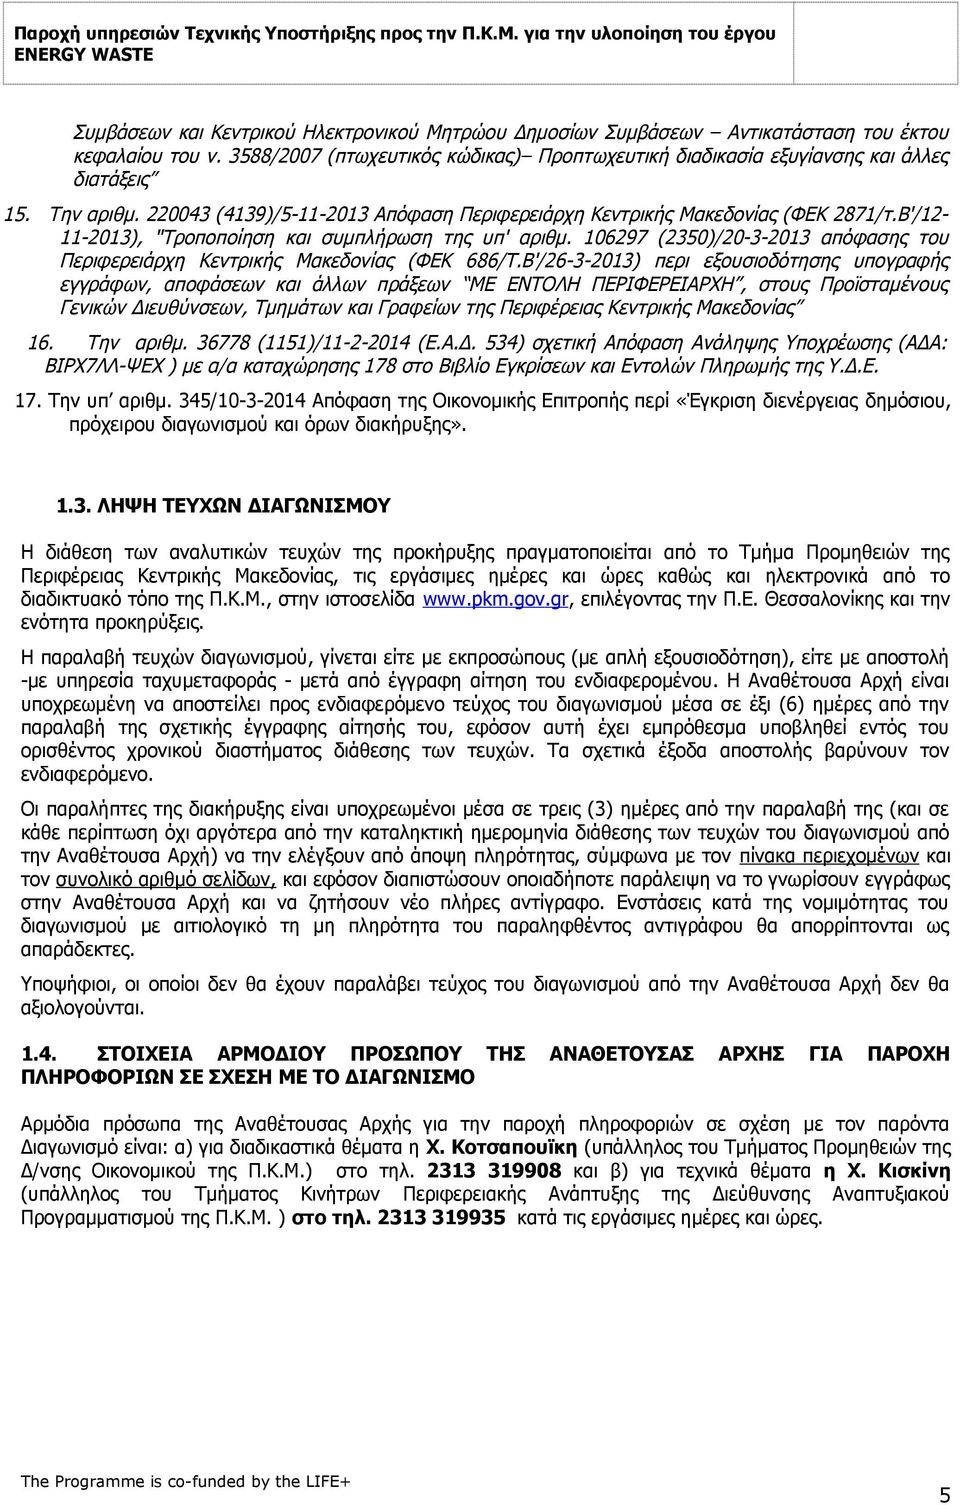 106297 (2350)/20-3-2013 απόφασης του Περιφερειάρχη Κεντρικής Μακεδονίας (ΦΕΚ 686/Τ.